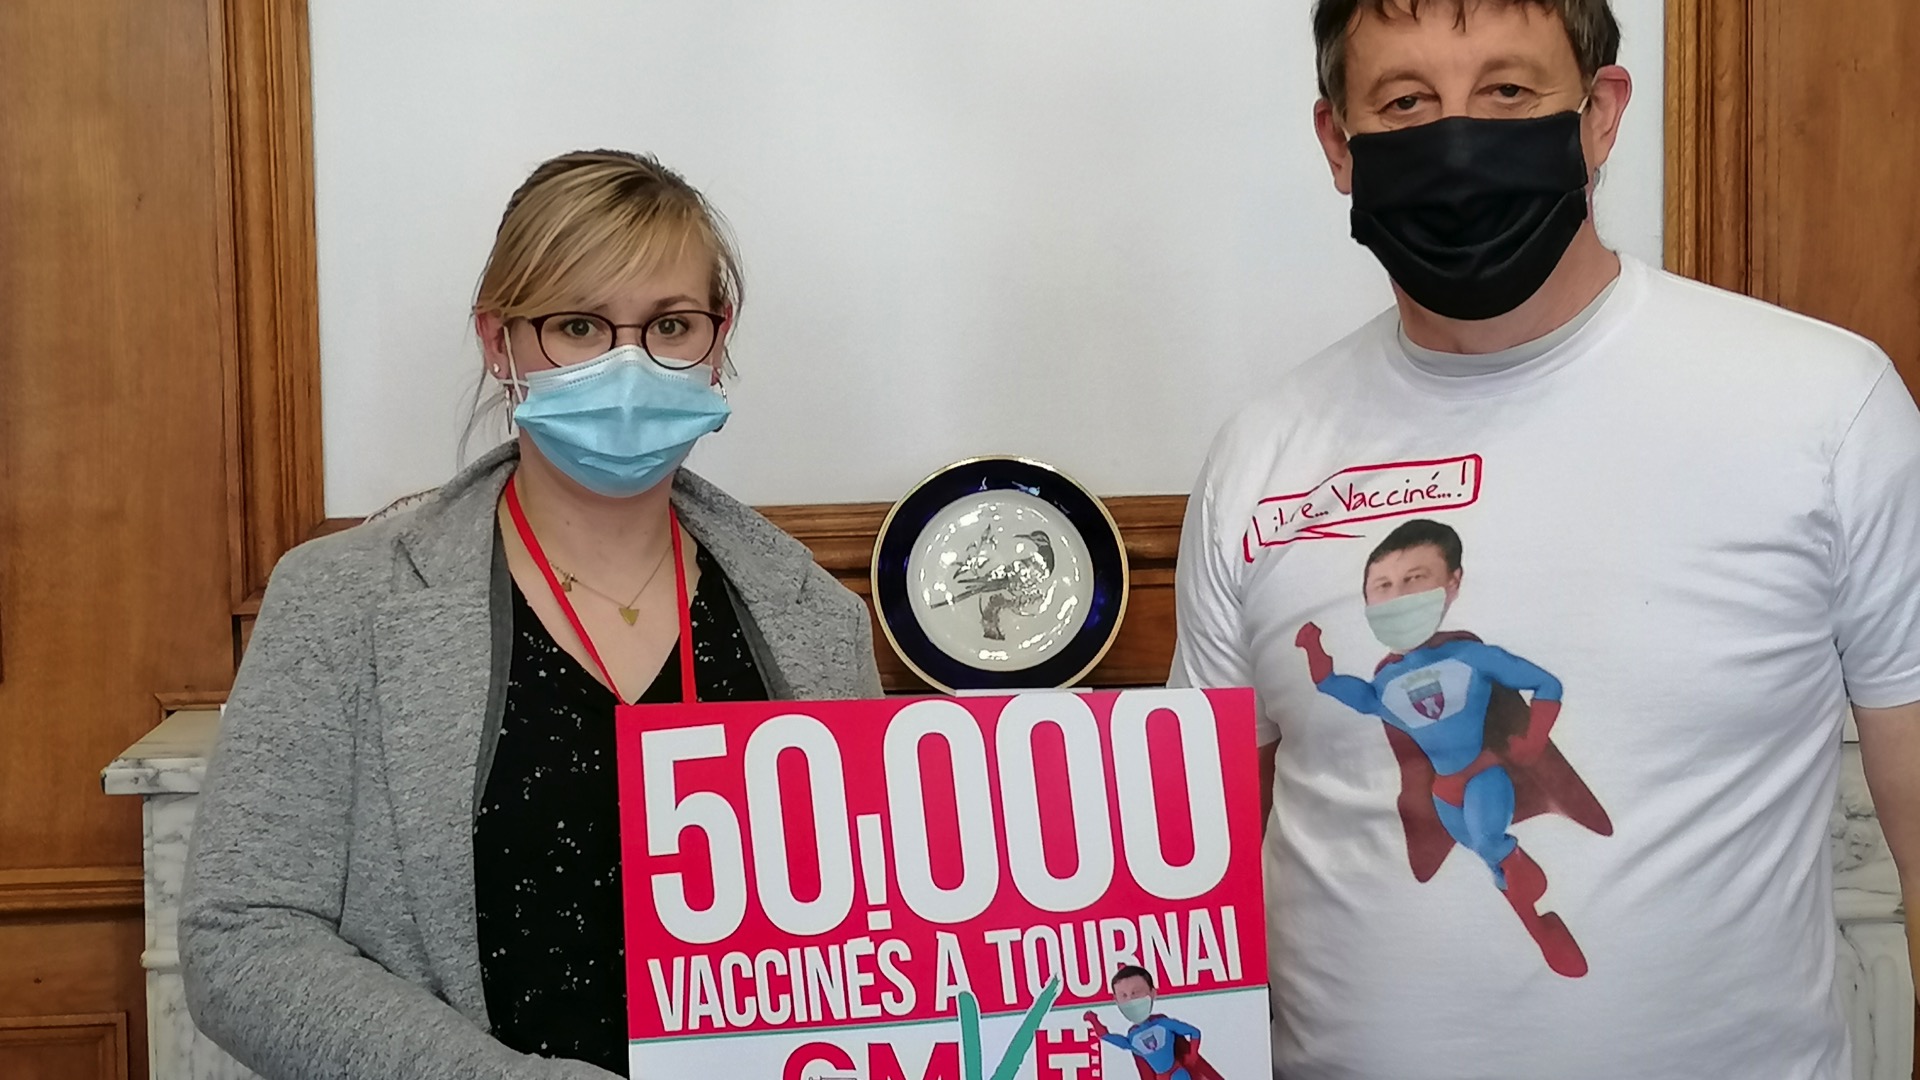 Centre de vaccination de Tournai : le cap des 50.000 vaccinés dépassé